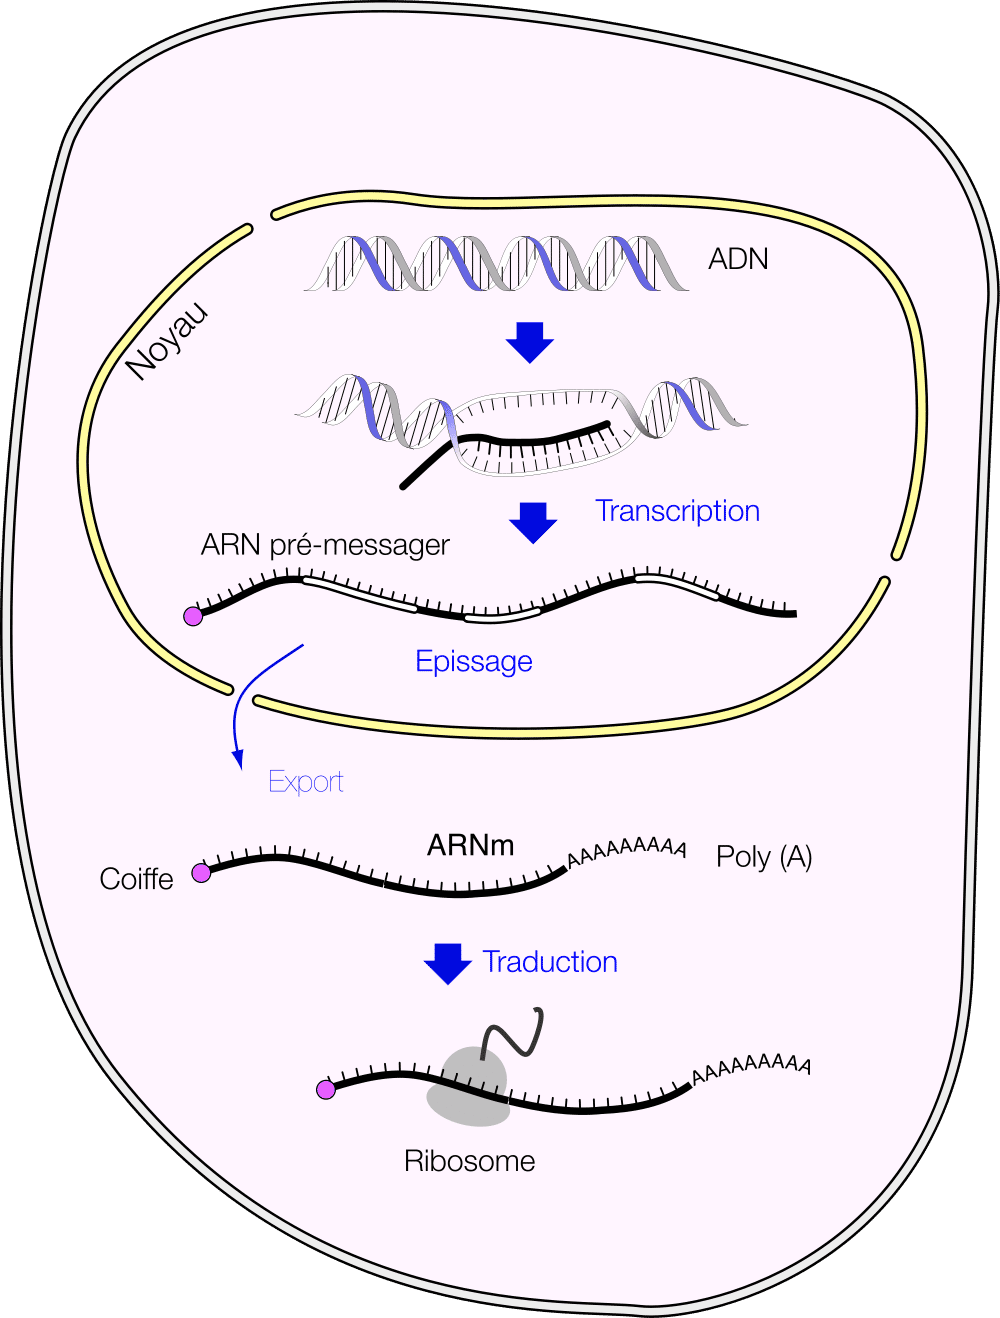 Les ARNm sont traduits en protéines dans le cytoplasme des cellules eucaryotes. © Fdardel, <em>Wikimedia Commons</em>, cc by sa 3.0